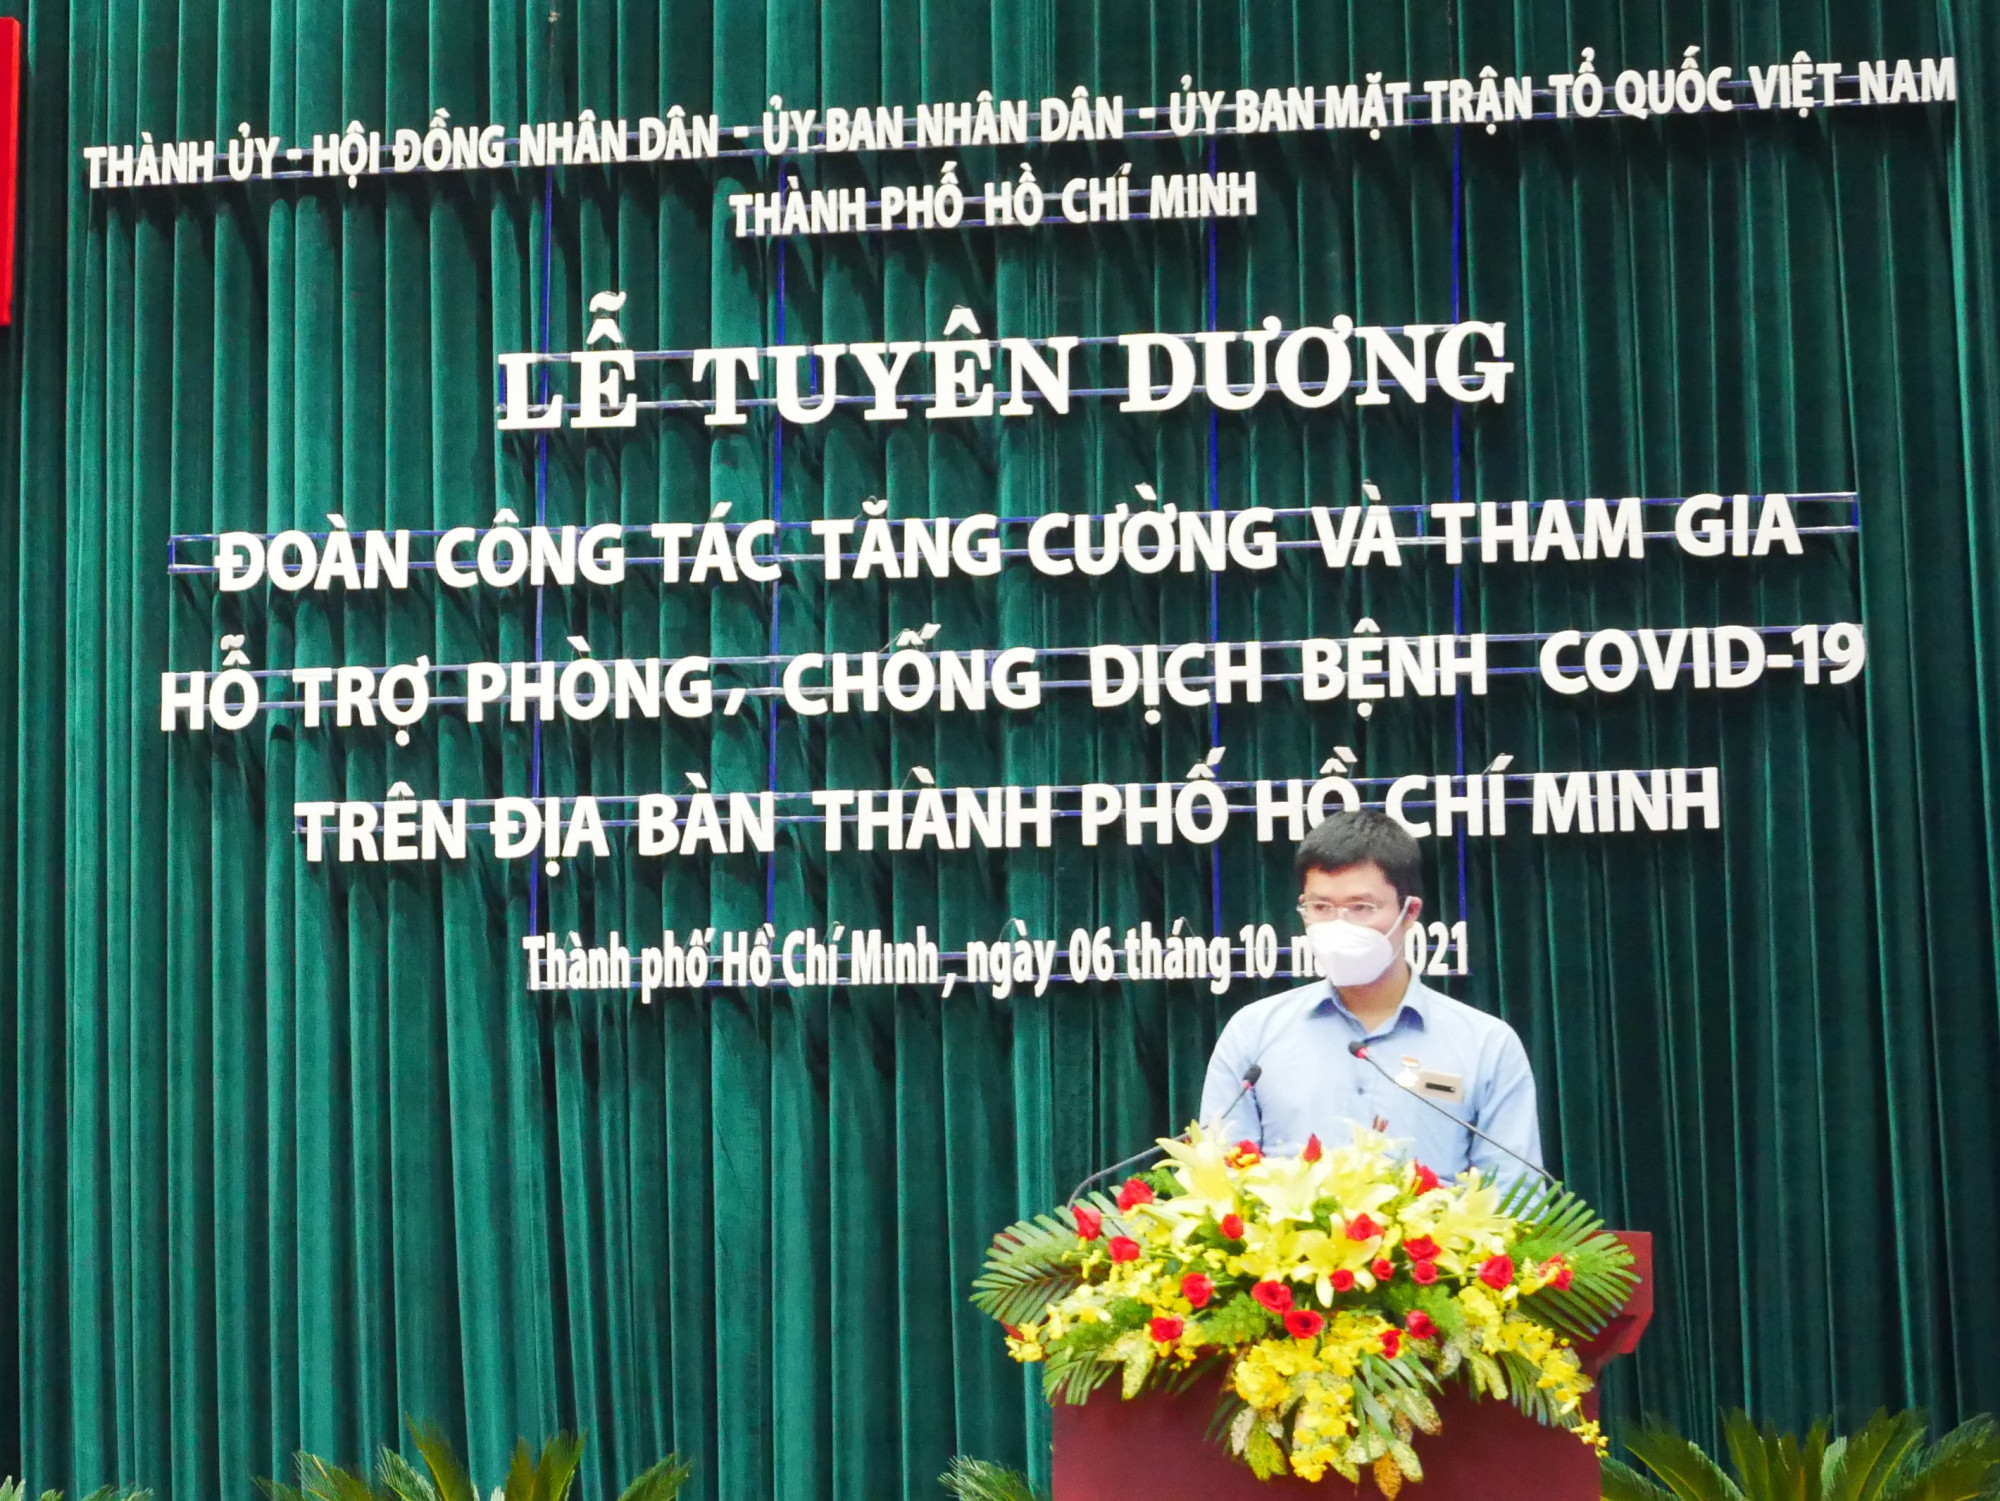 Bác sĩ Bùi Quang Huy phát biểu tại buổi lễ. Theo bác sĩ, trong mấy tháng qua, các đoàn y, bác sĩ tham gia hỗ trợ tại TP đã cùng với lãnh đạo và người dân TP sát cánh bên nhau chiến đấu, trở thành đồng đội thân thiết của nhau